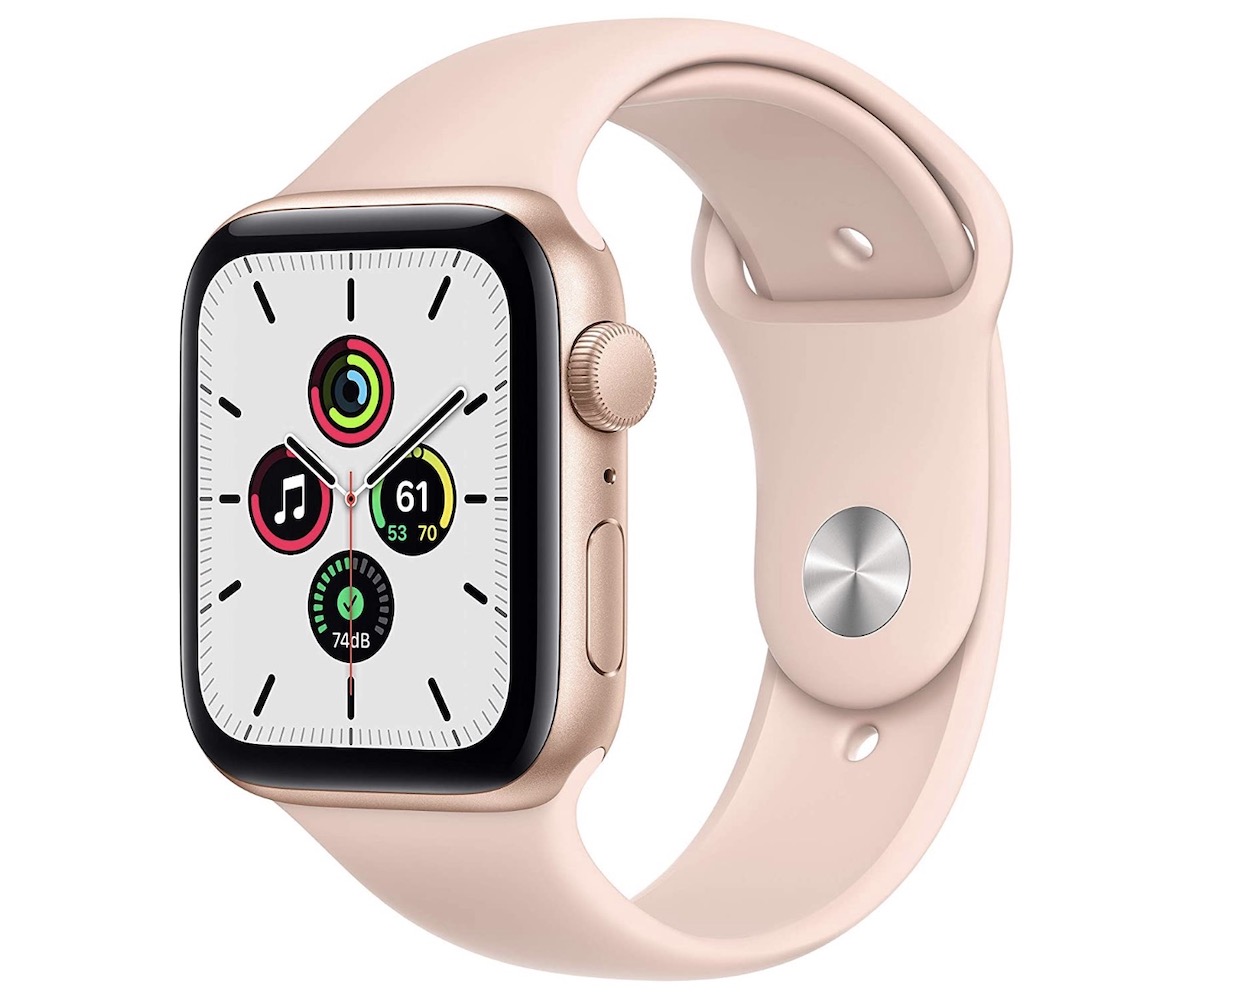 Apple Watch SE at the minimum price: 279.99 euros on Amazon